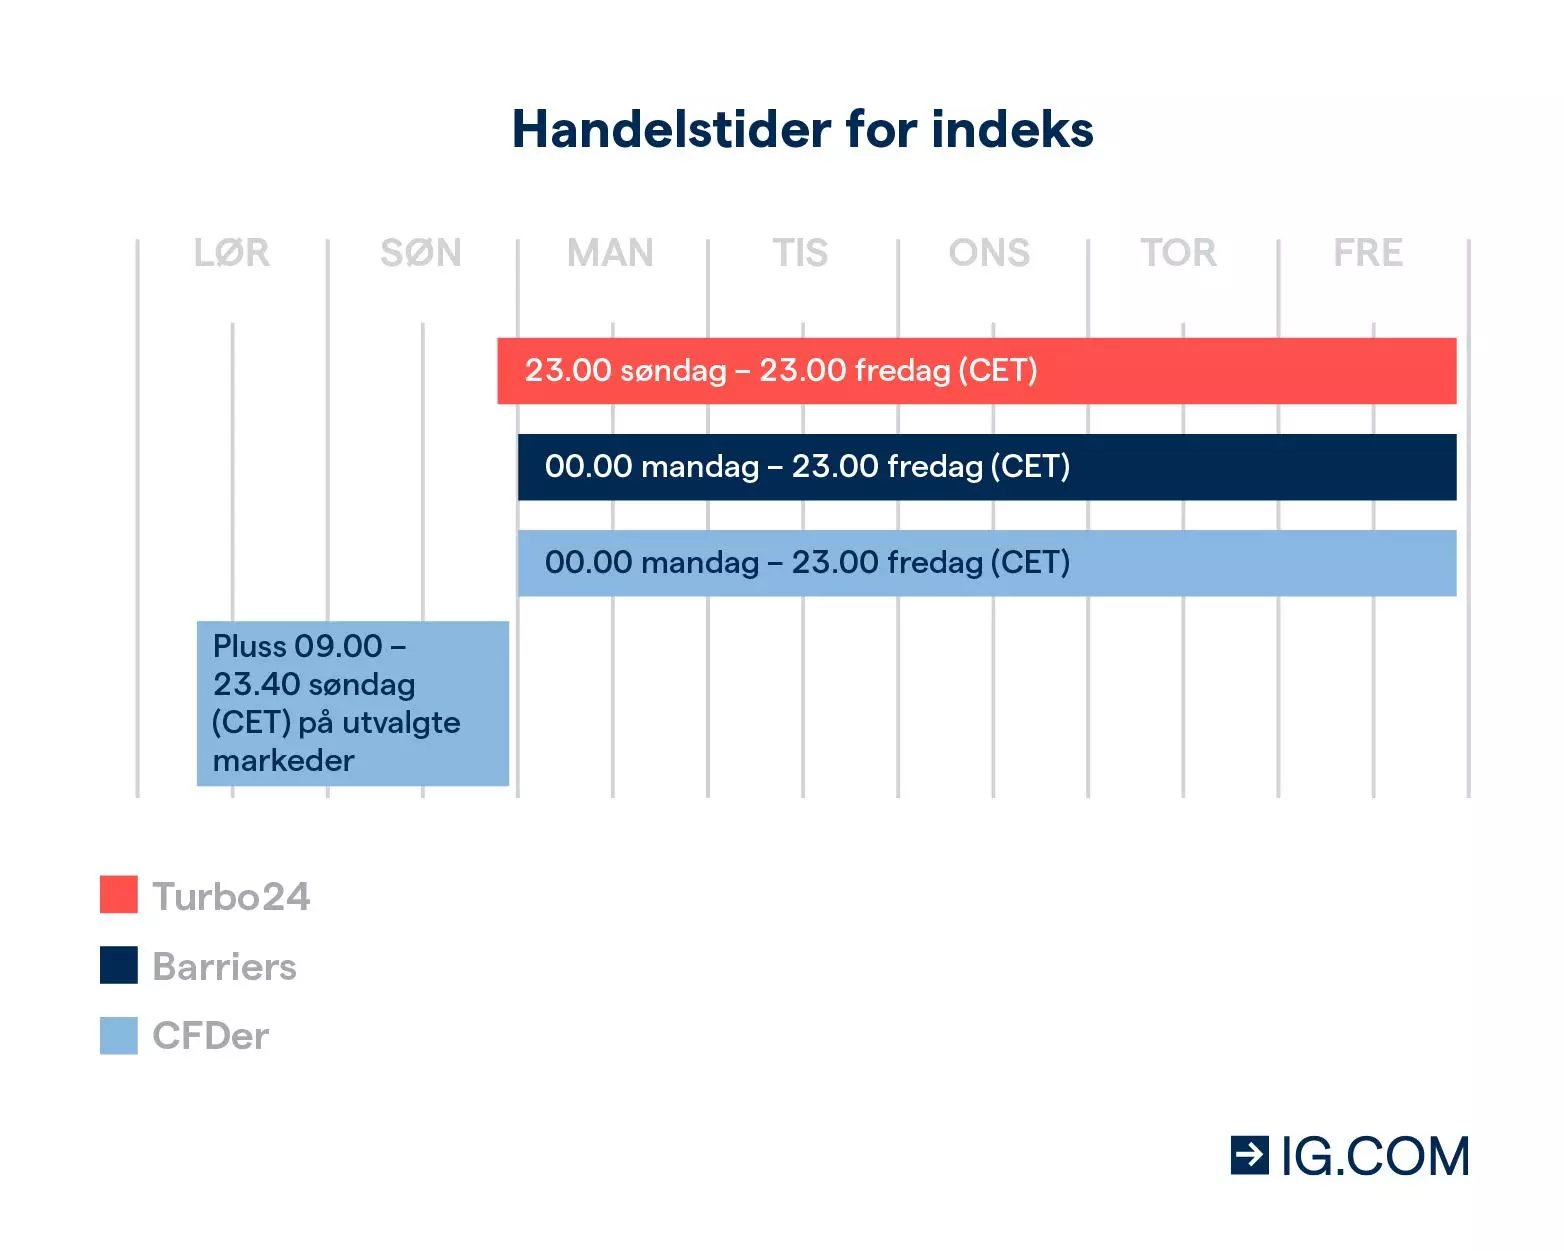 Handelstider for indeks